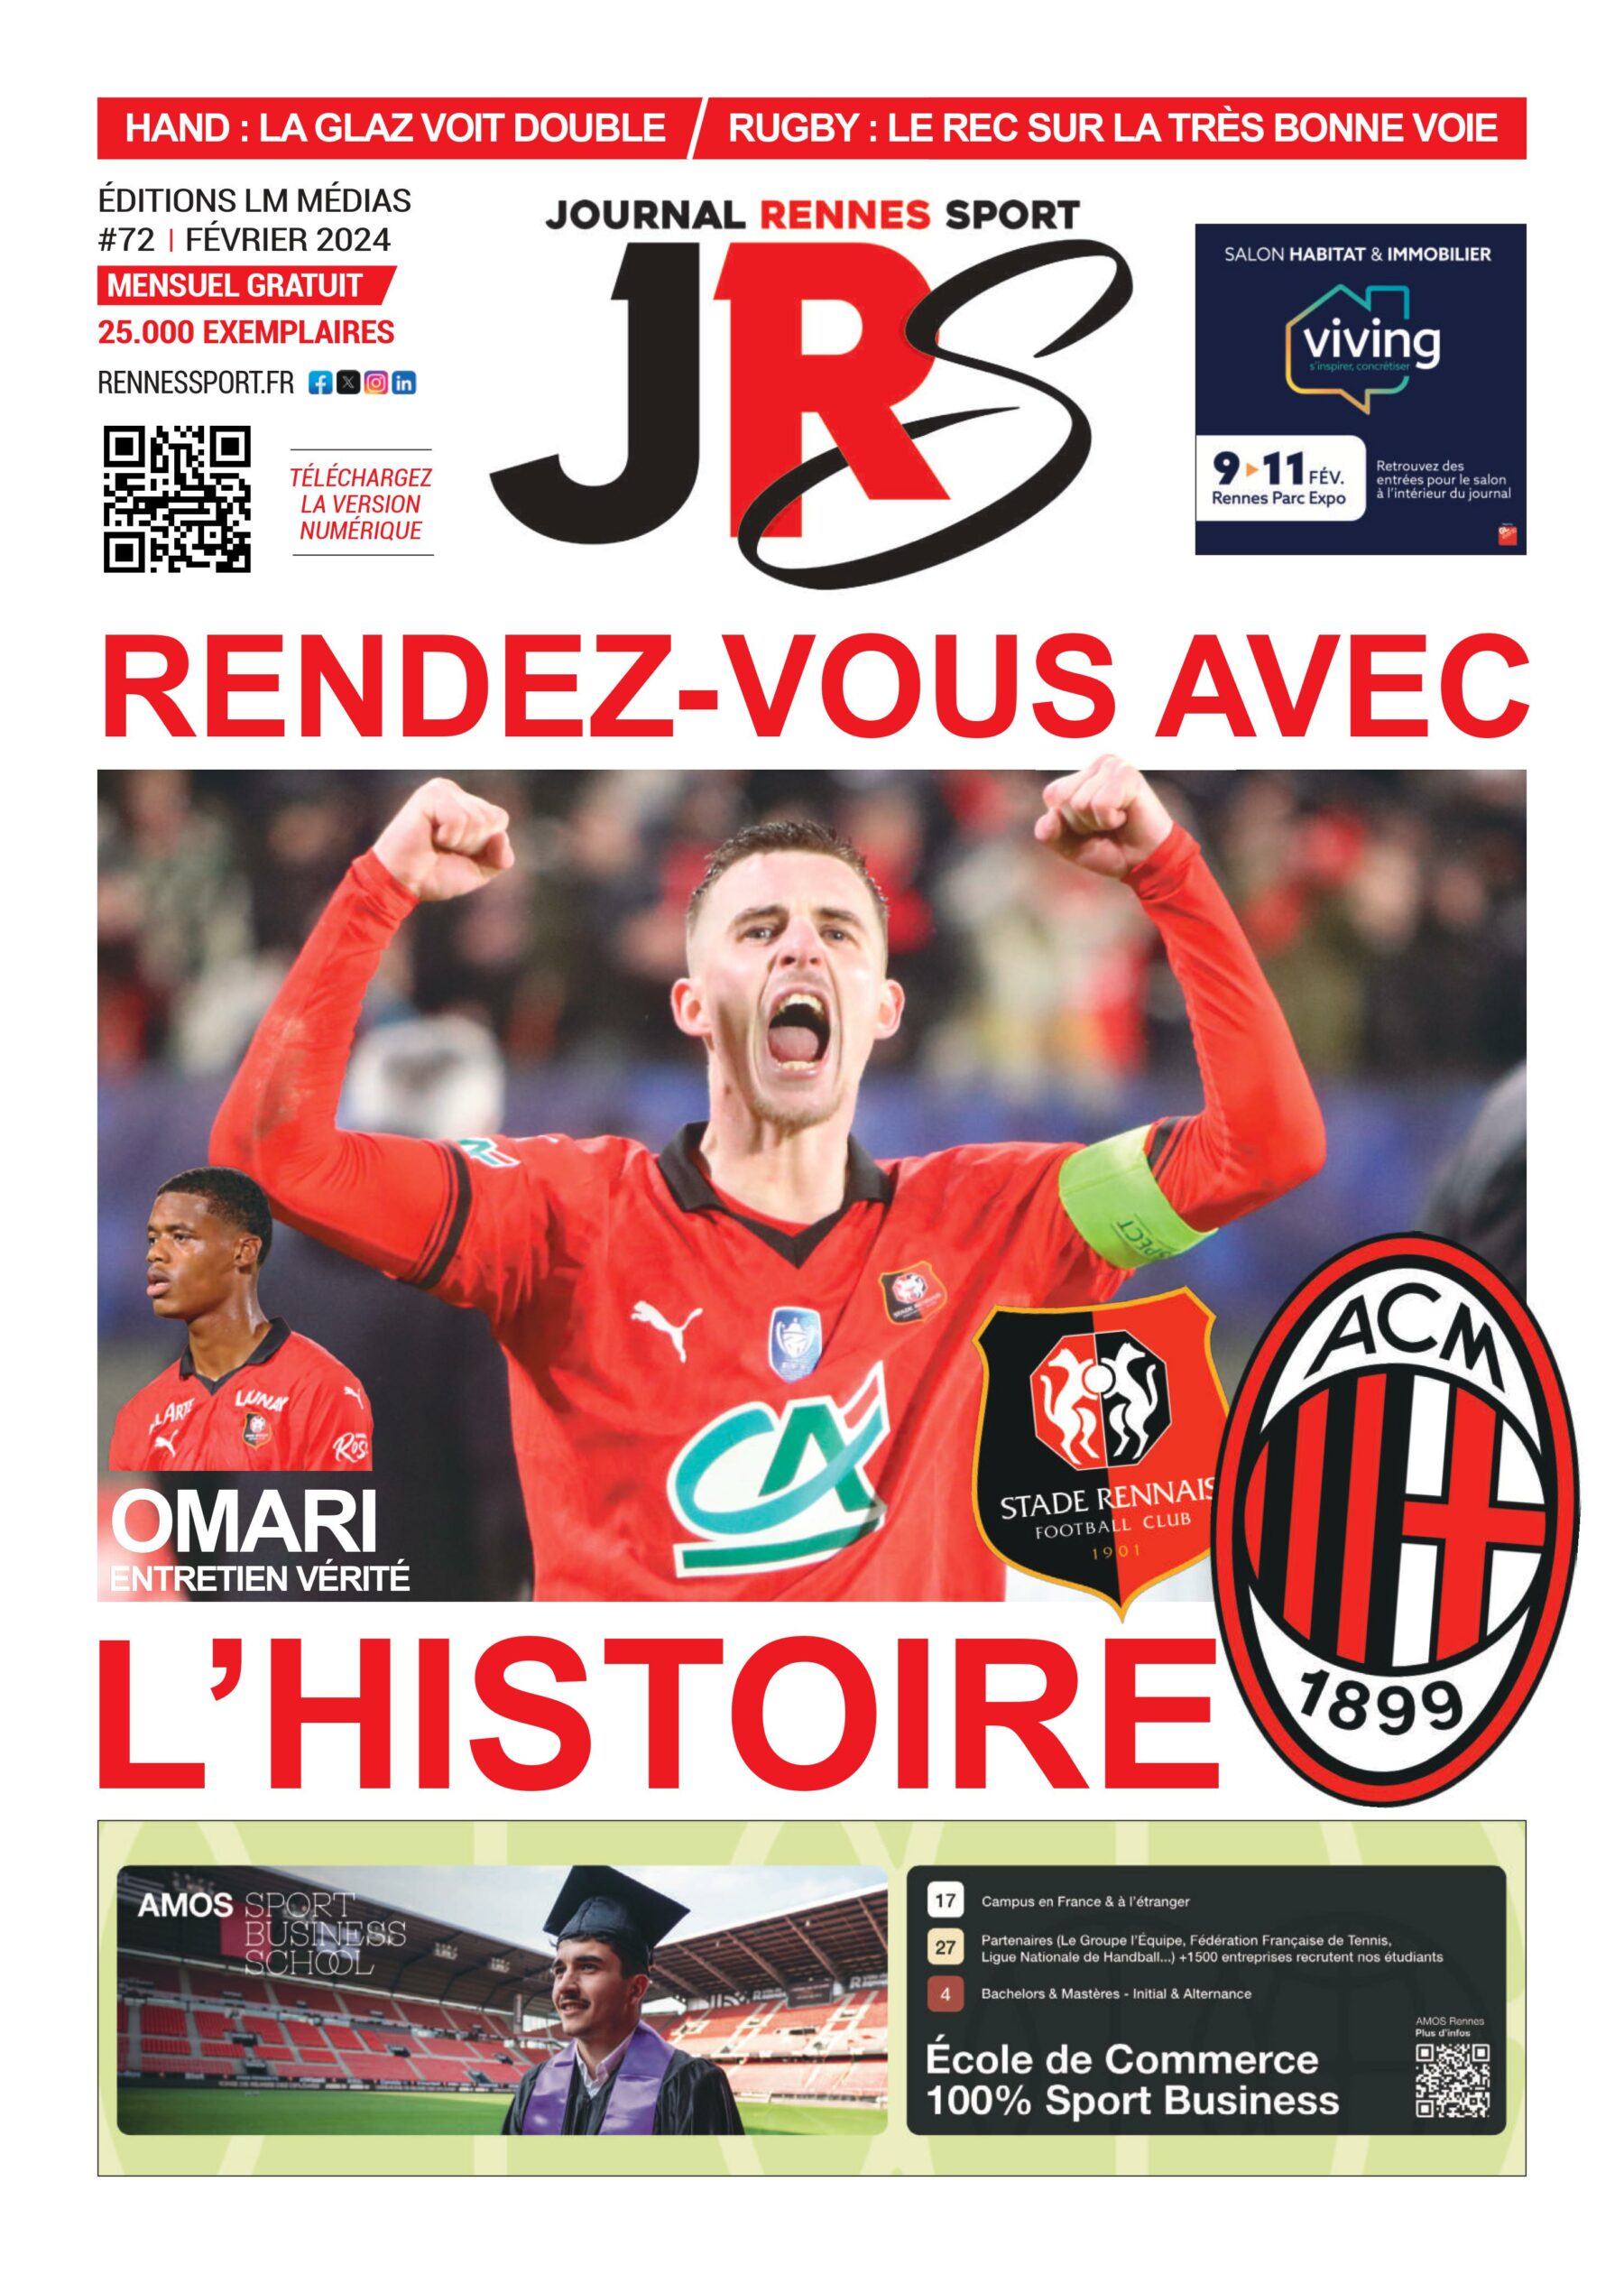 Une du Journal Rennes Sport avec Bourigeaud heureux